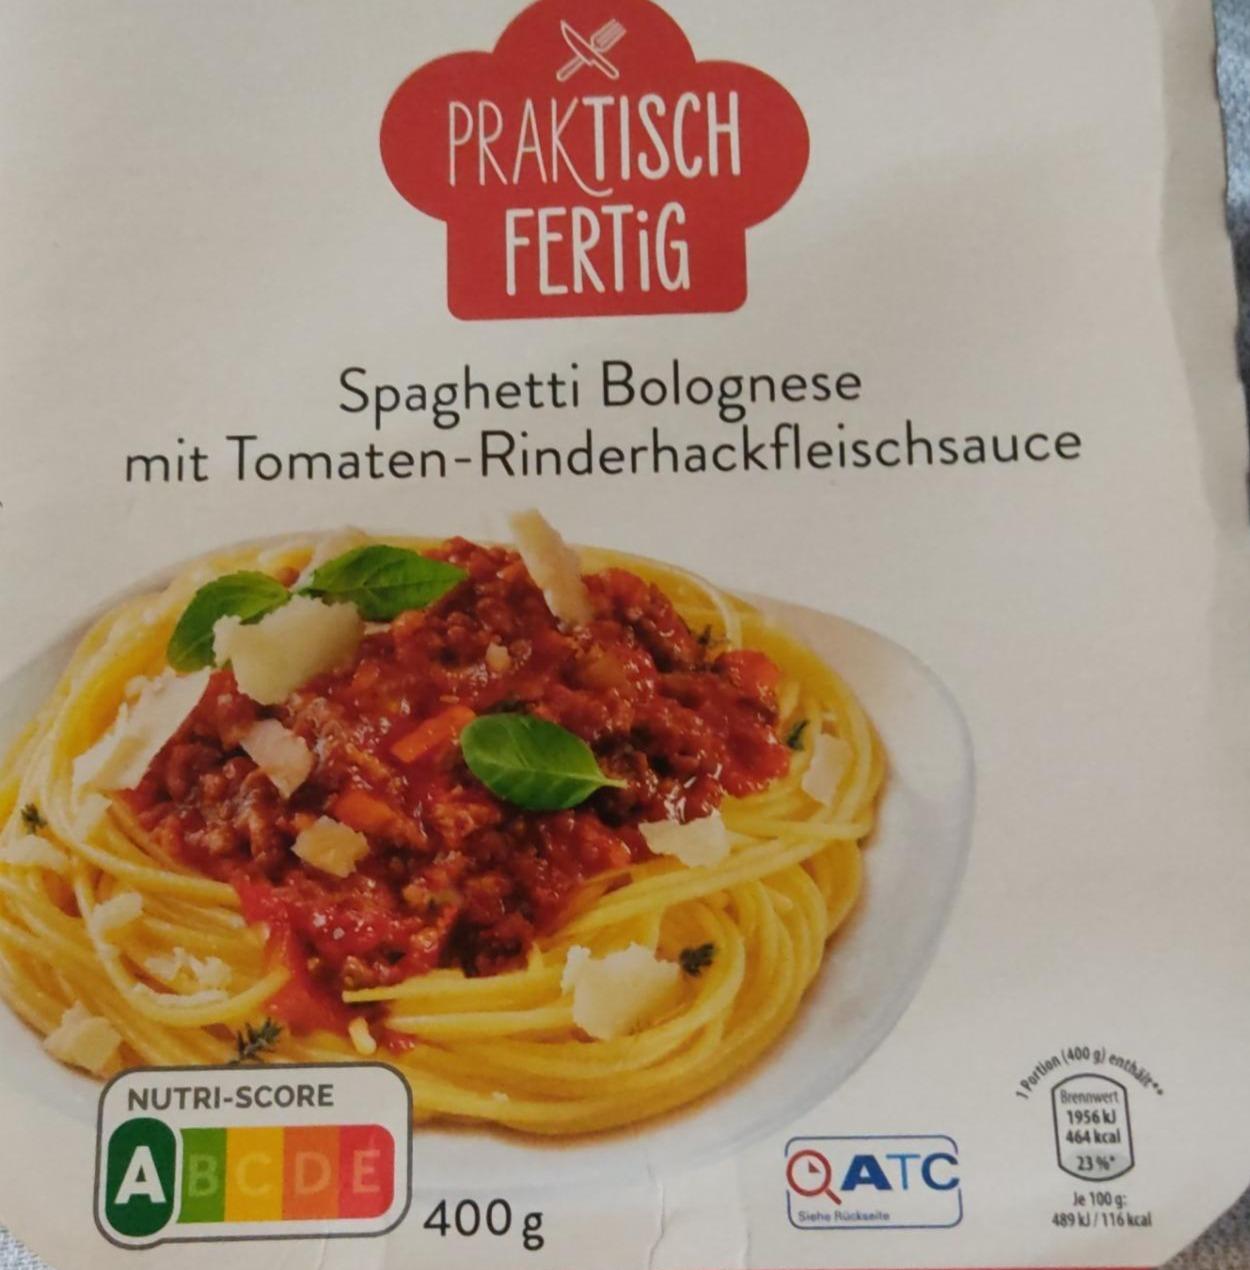 Fotografie - Spaghetti Bolognese mit Tomaten-Rinderhackfleischsauce Praktisch Fertig